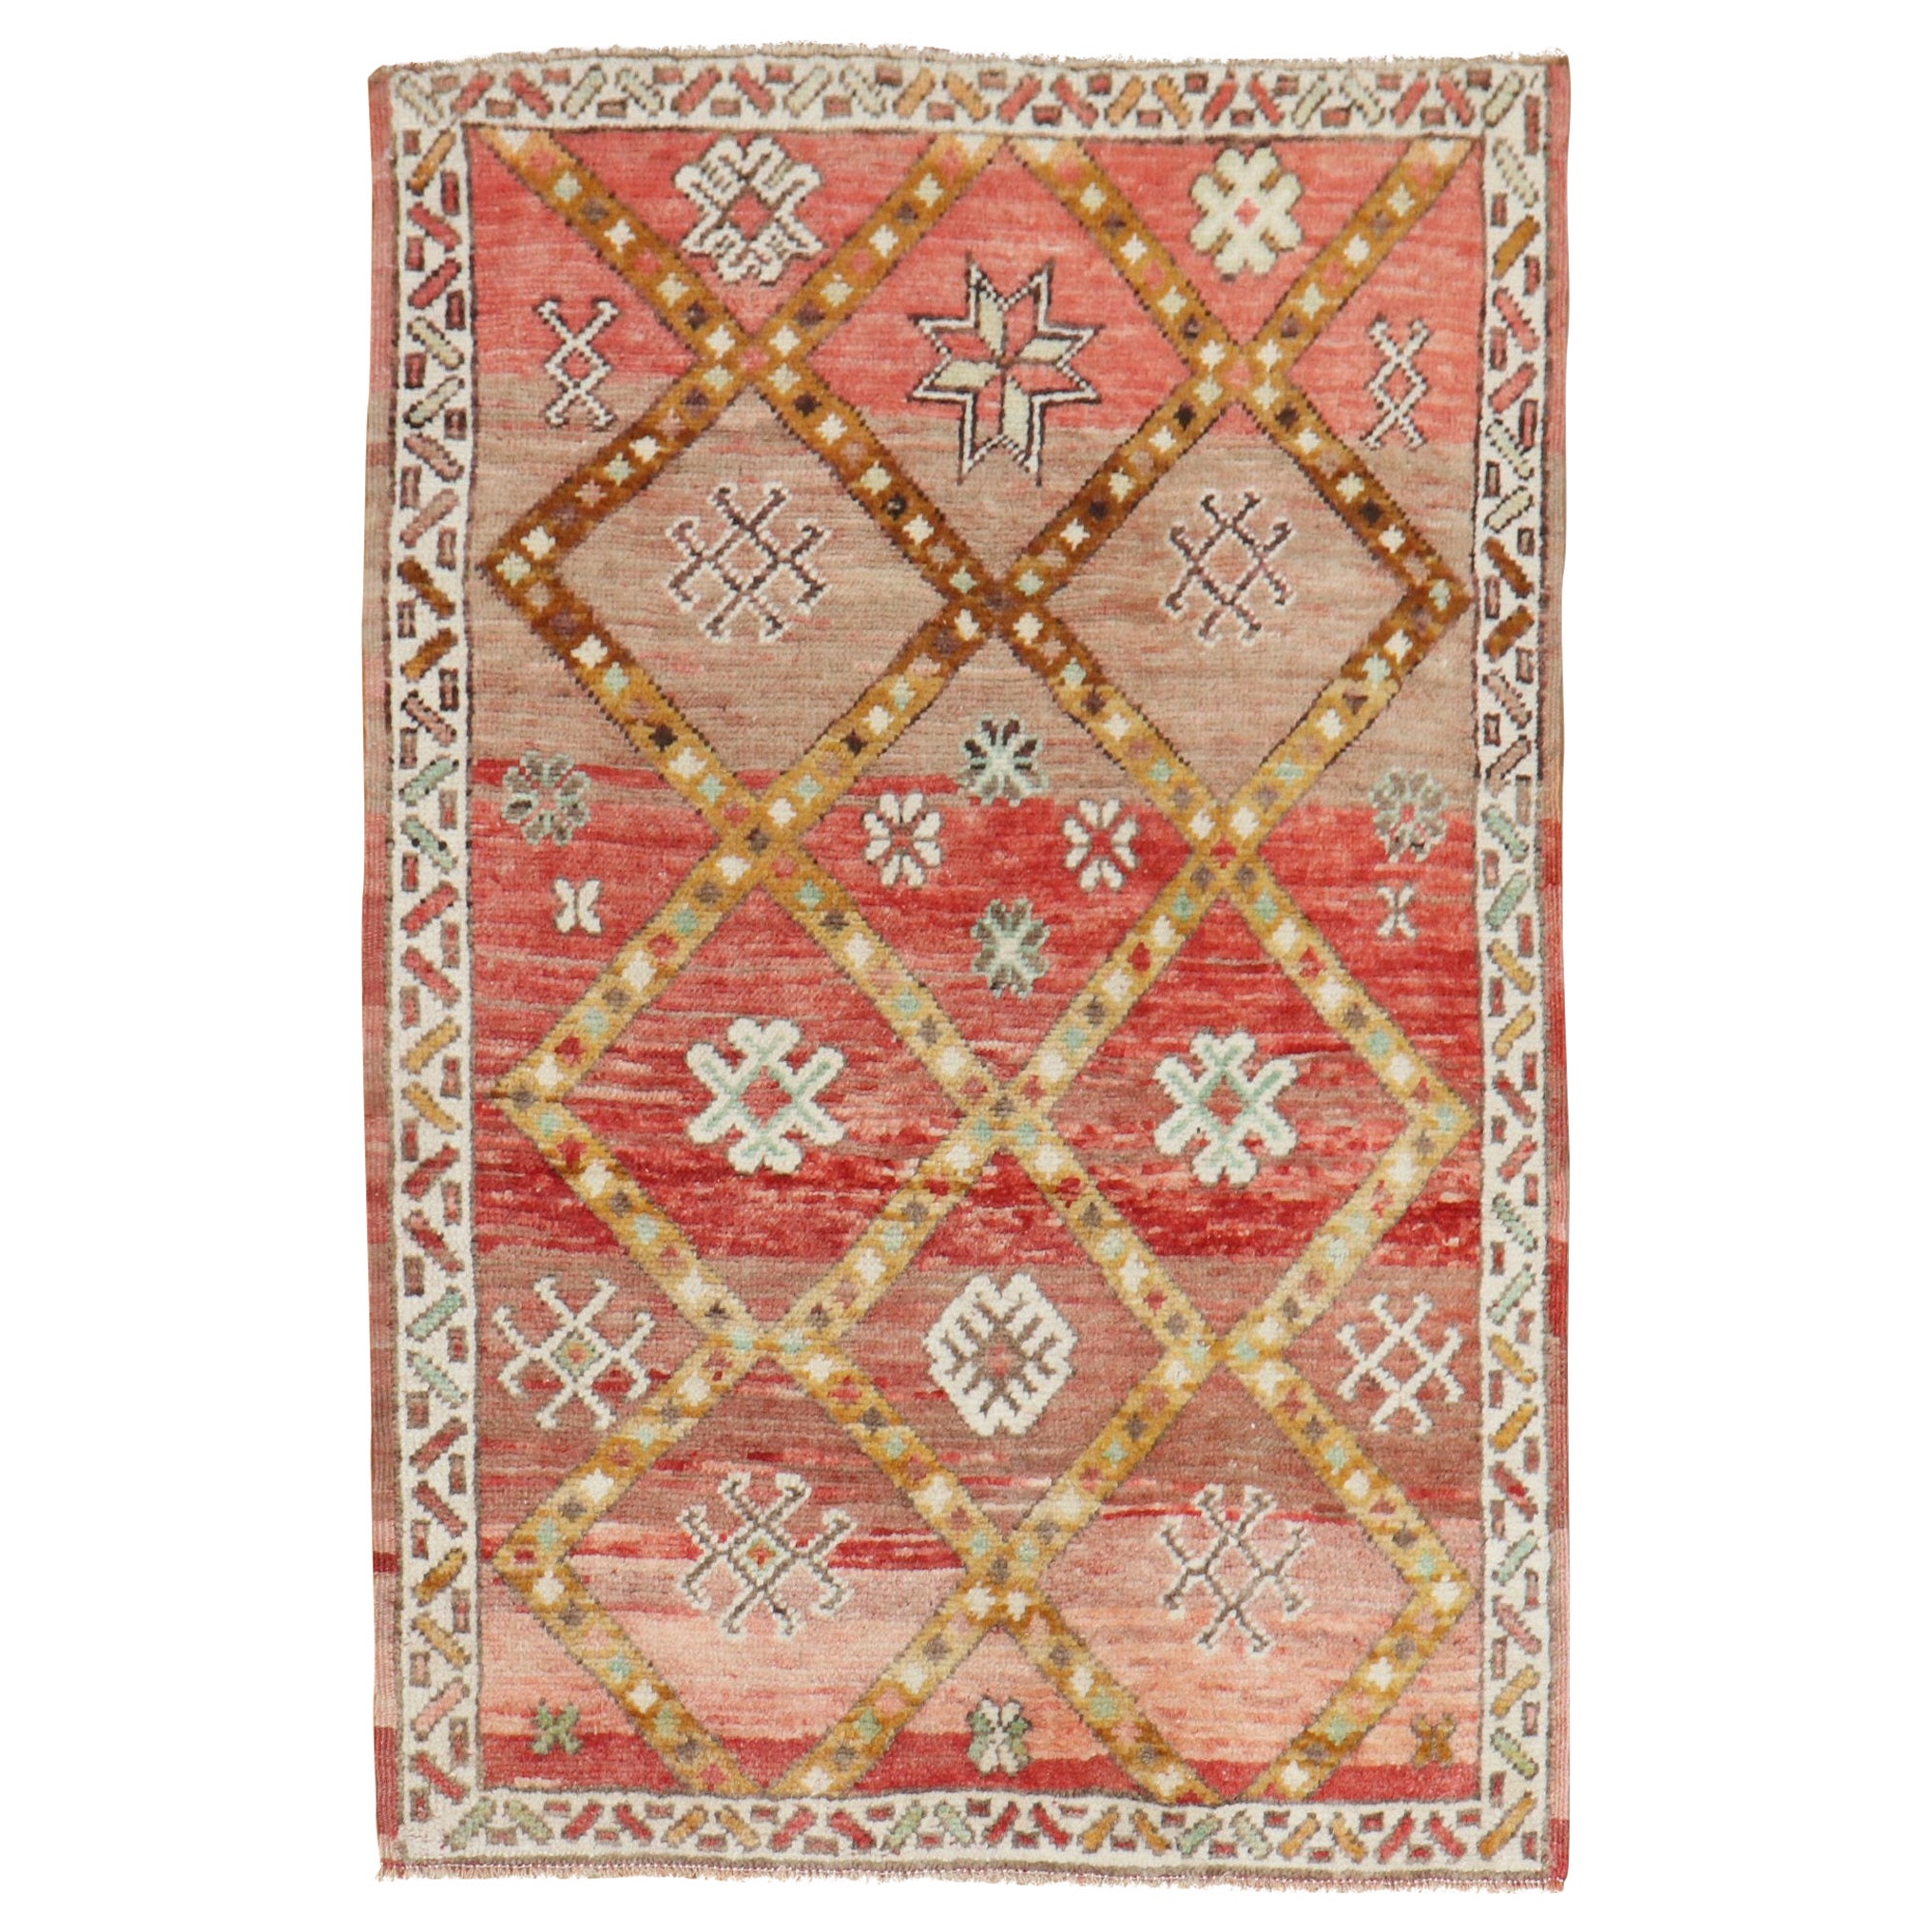 Marokkanischer Vintage-Teppich in Schachtelgröße